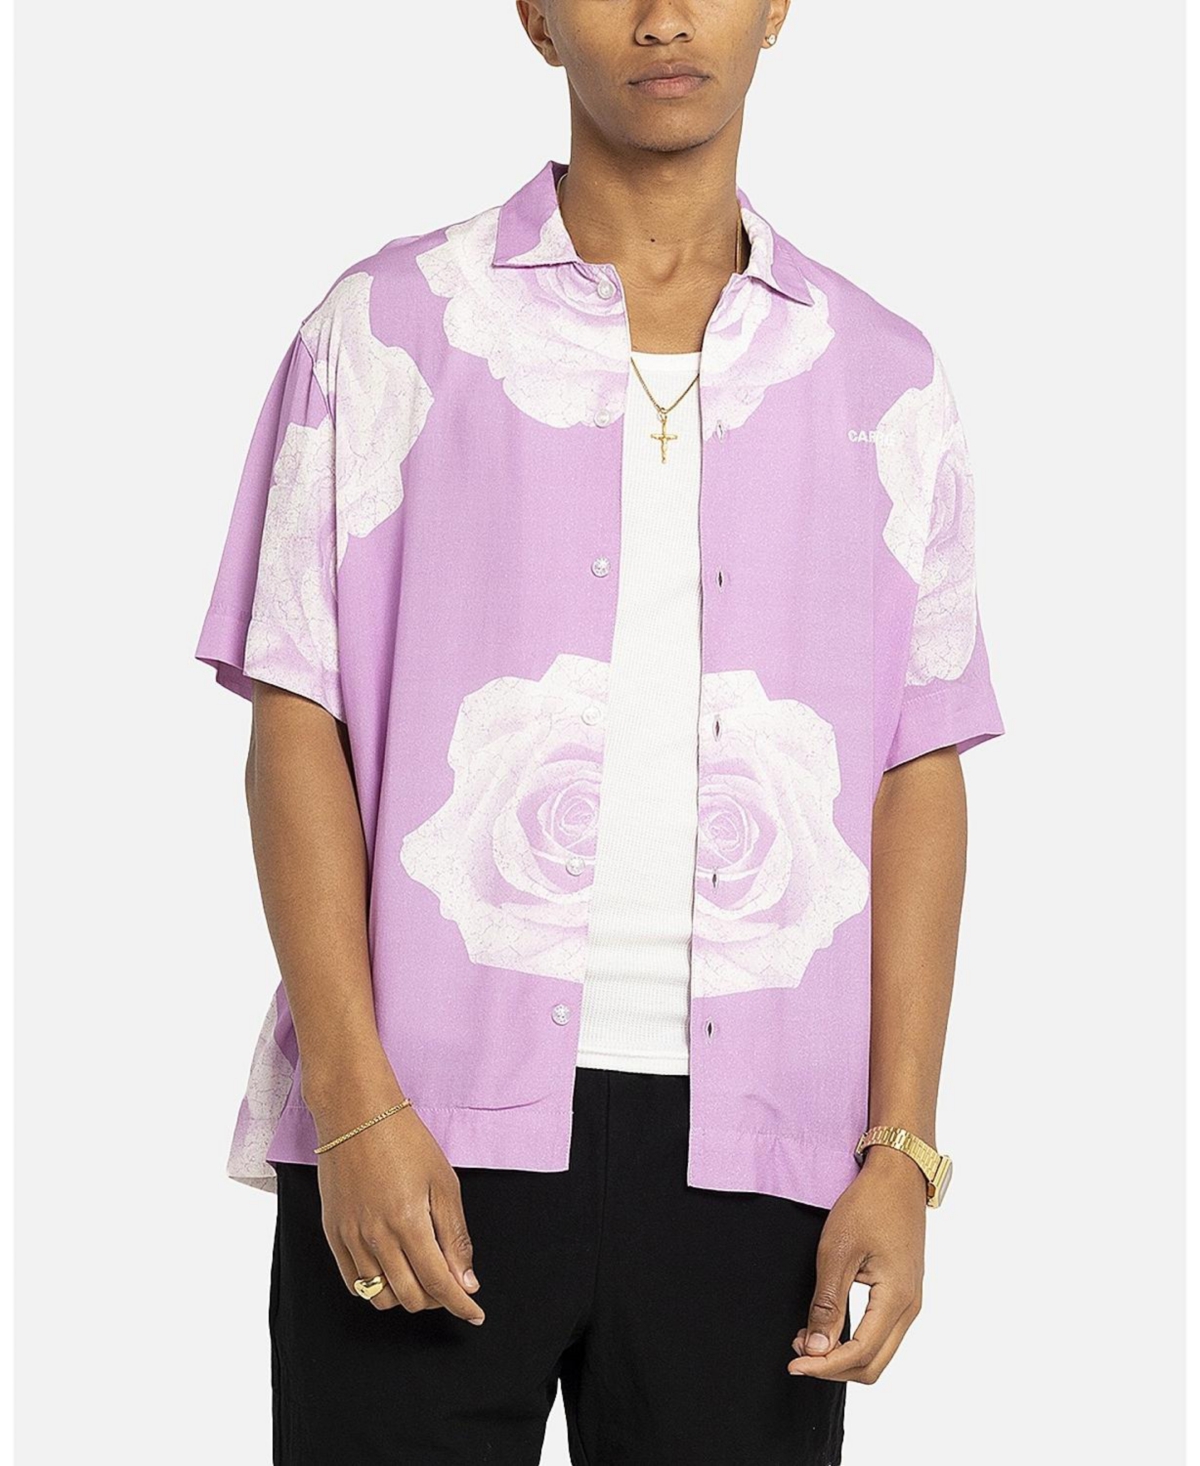 Men's Rose Bunch Button Up Shirt - XXXLarge, Light/Pastel Purple - Pastel purple